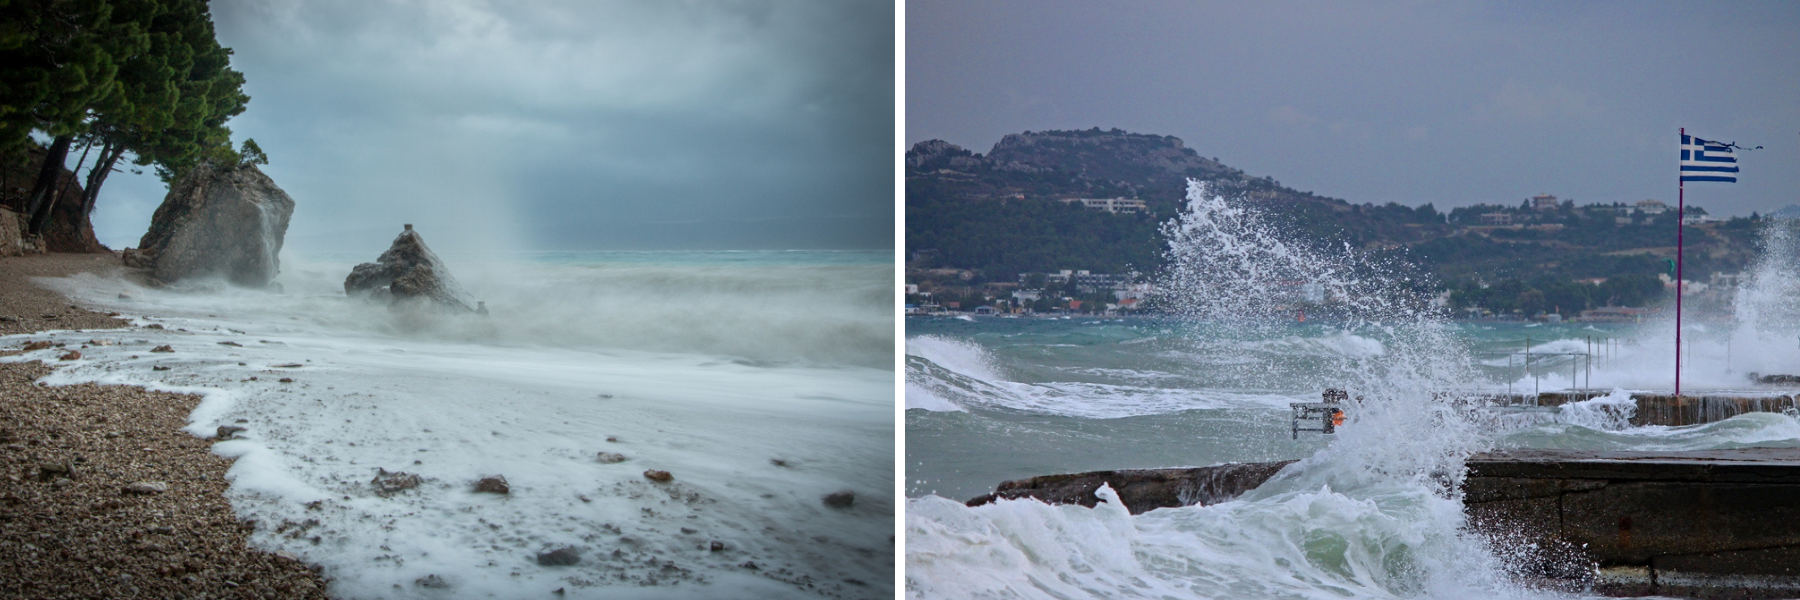 In Croazia e in Grecia si possono incontrare venti e condizioni meteorologiche sfavorevoli.